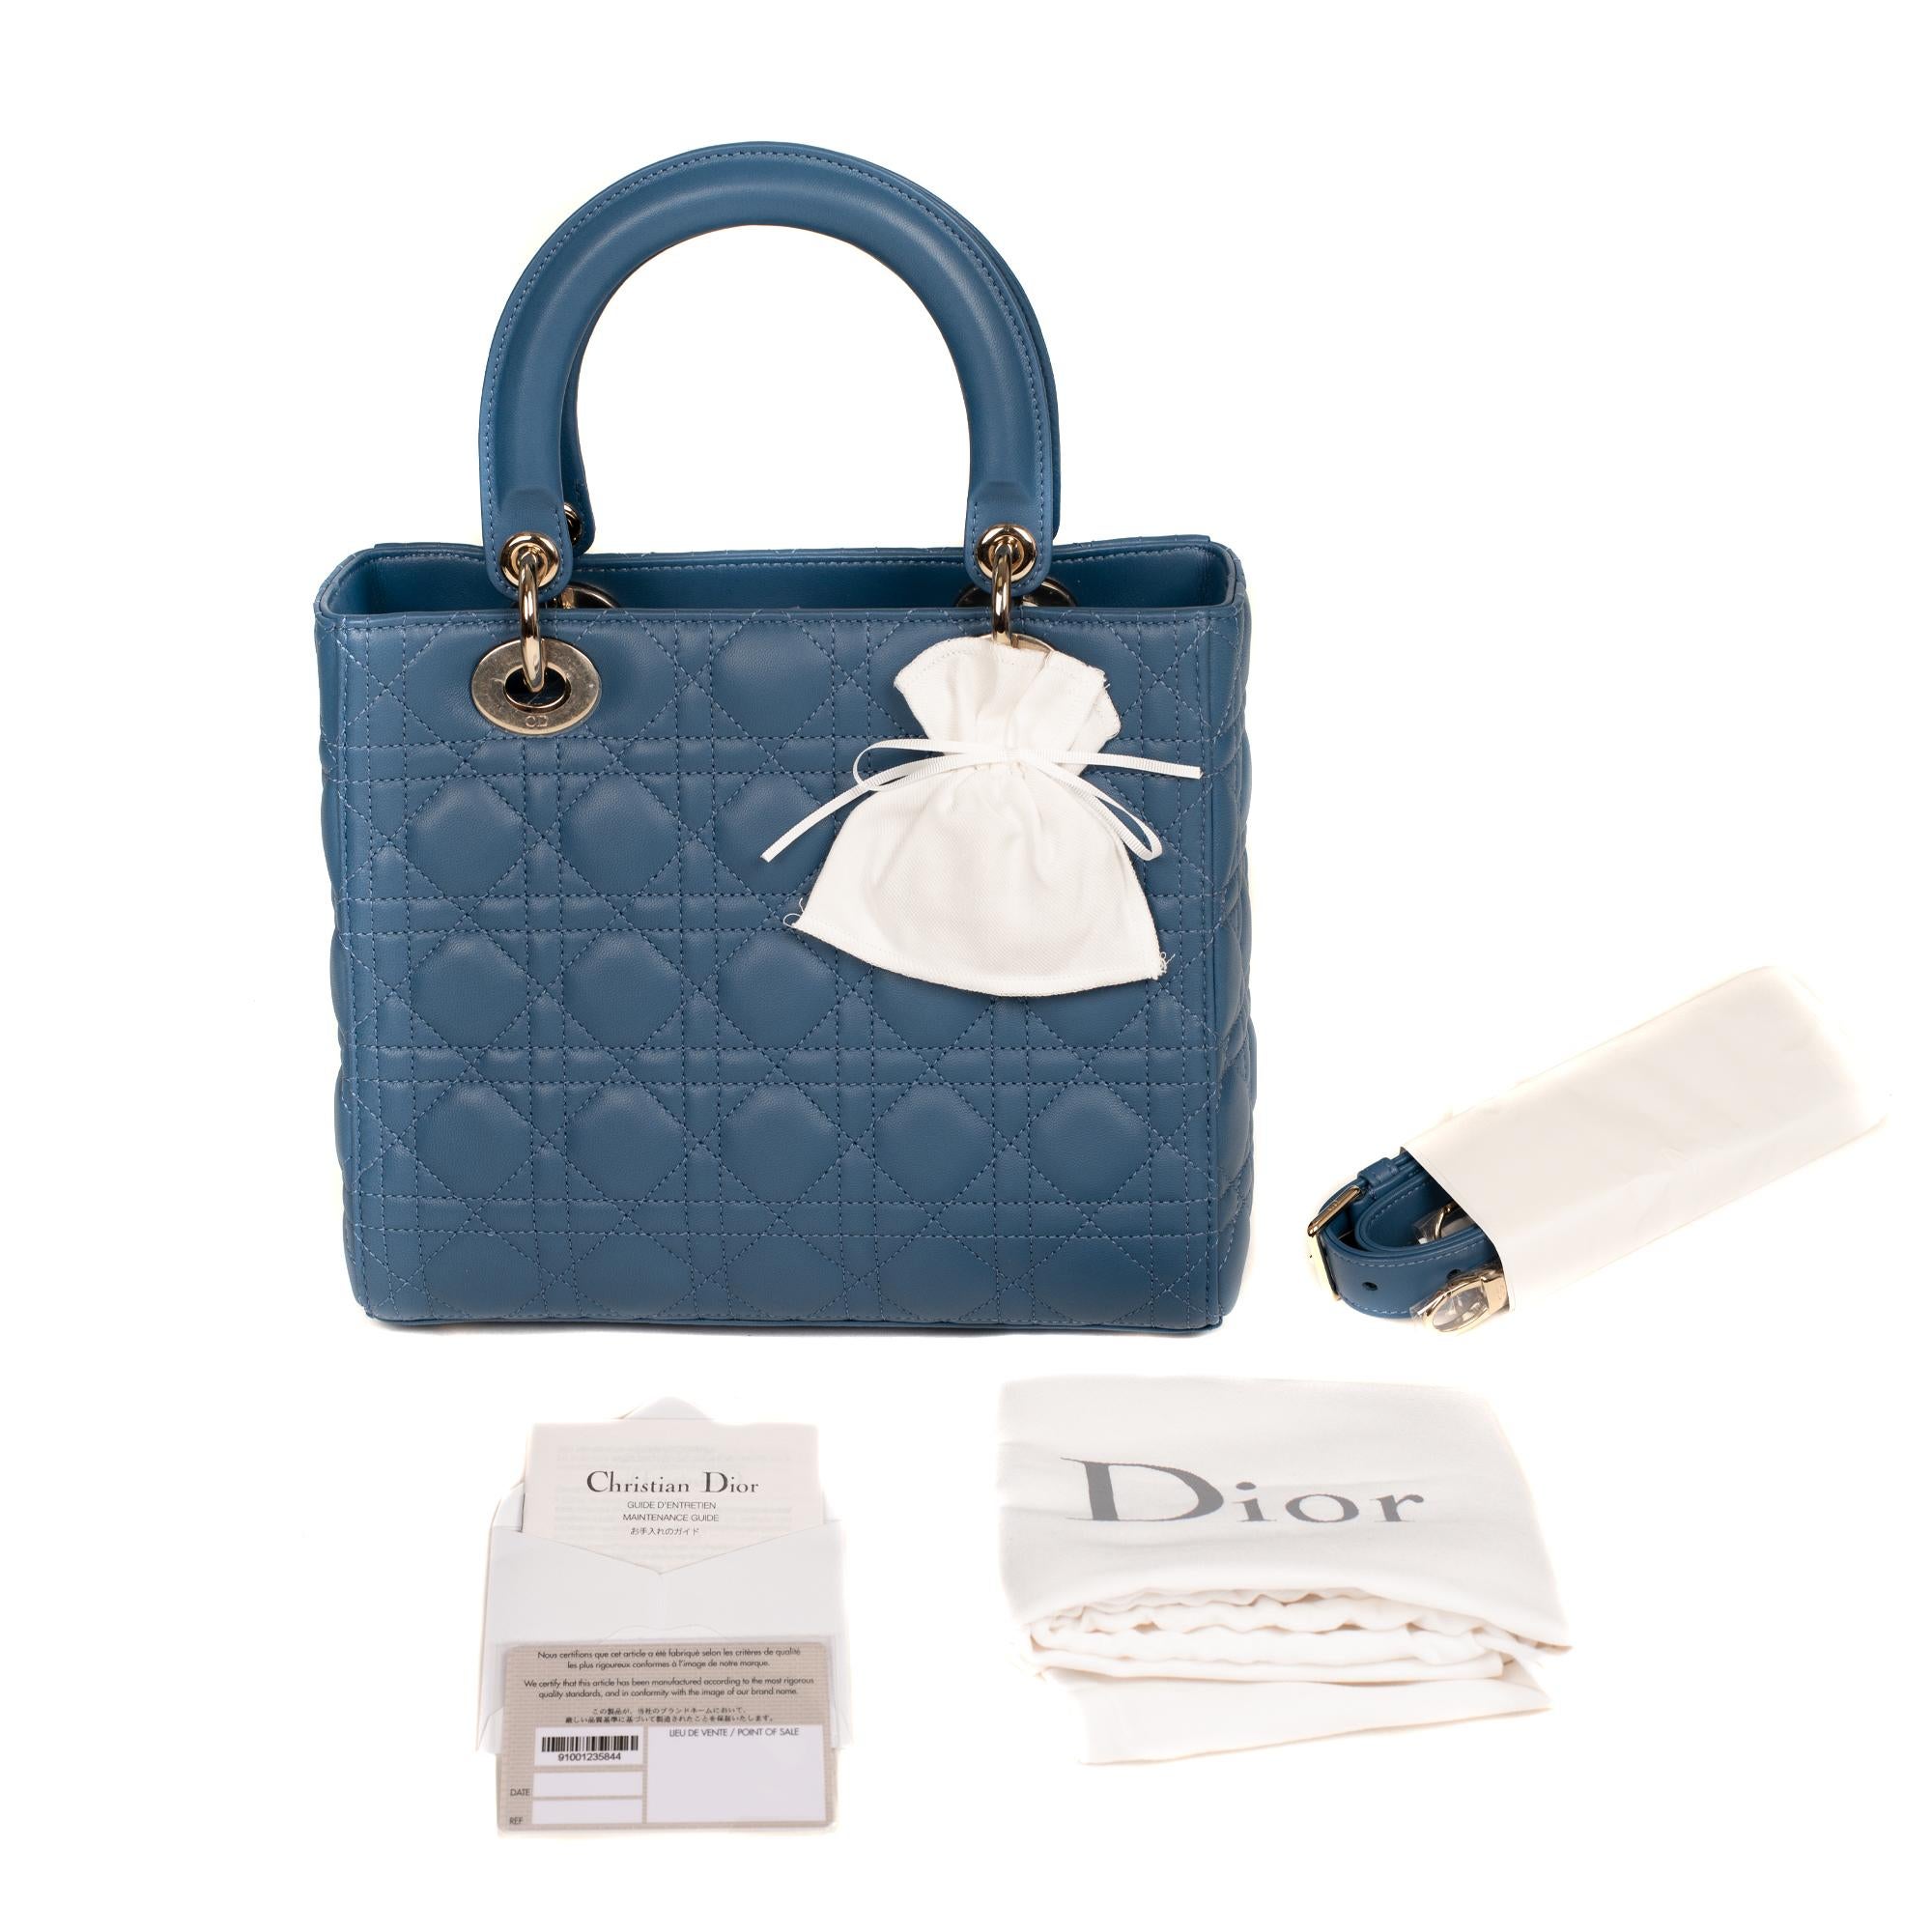  Christian Dior Lady Dior MM (Medium size) handbag in blue cannage leather, PHW 6